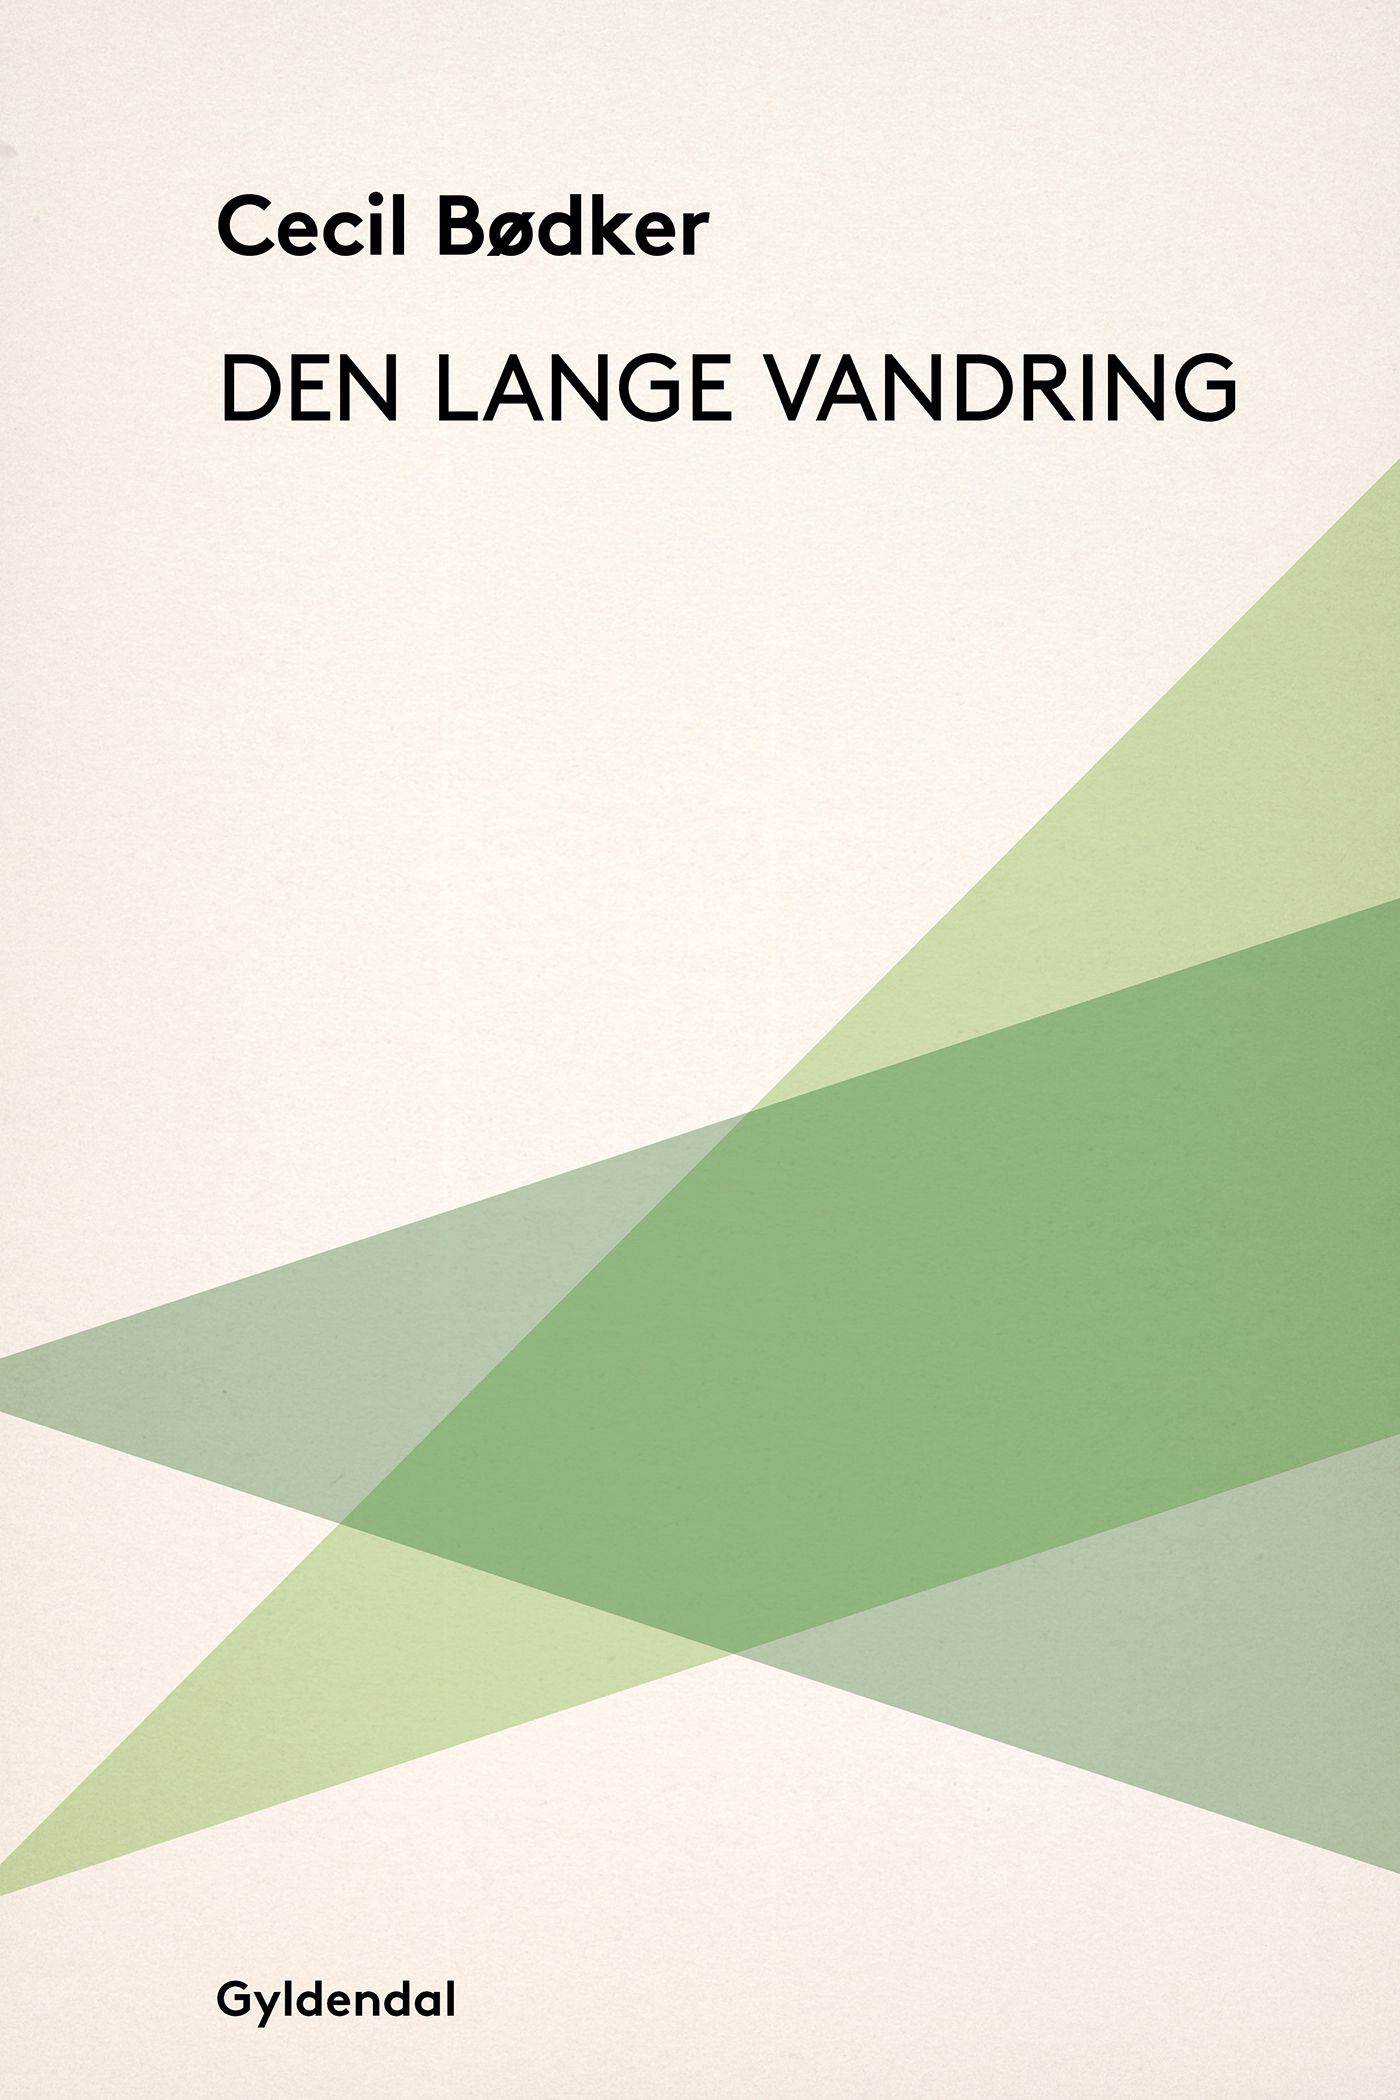 Den lange vandring, e-bog af Cecil Bødker